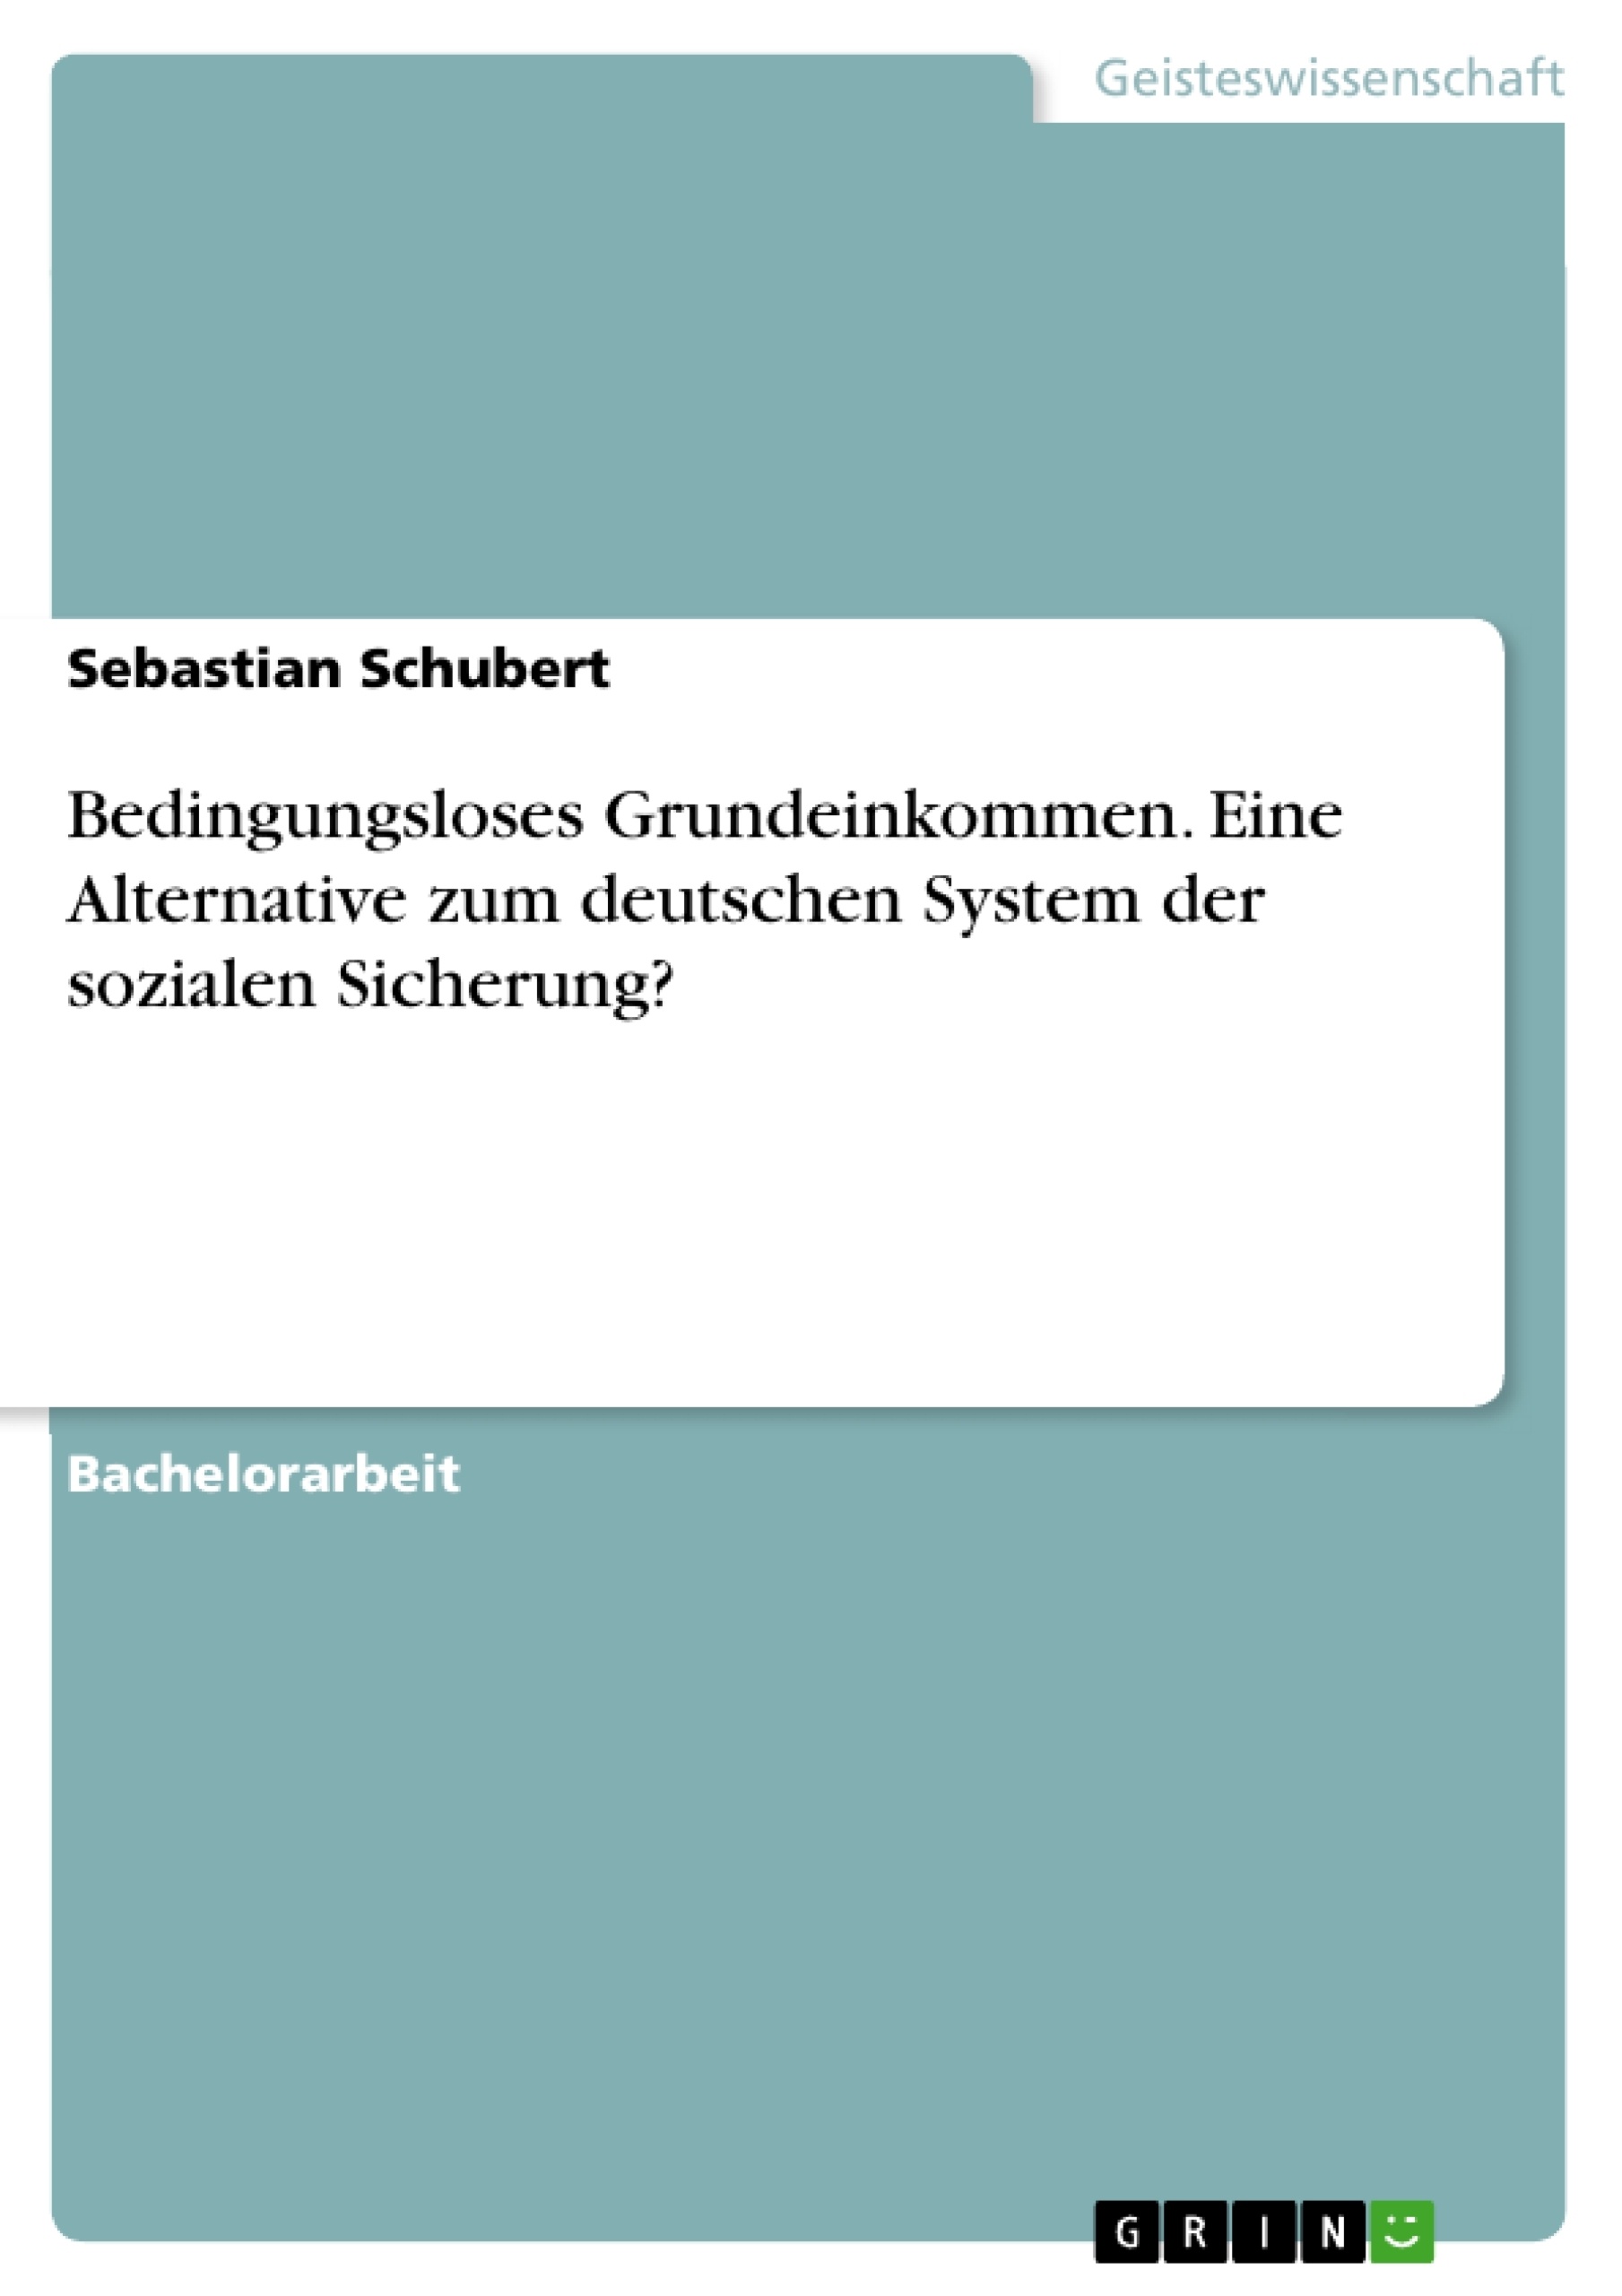 Título: Bedingungsloses Grundeinkommen. Eine Alternative zum deutschen System der sozialen Sicherung?